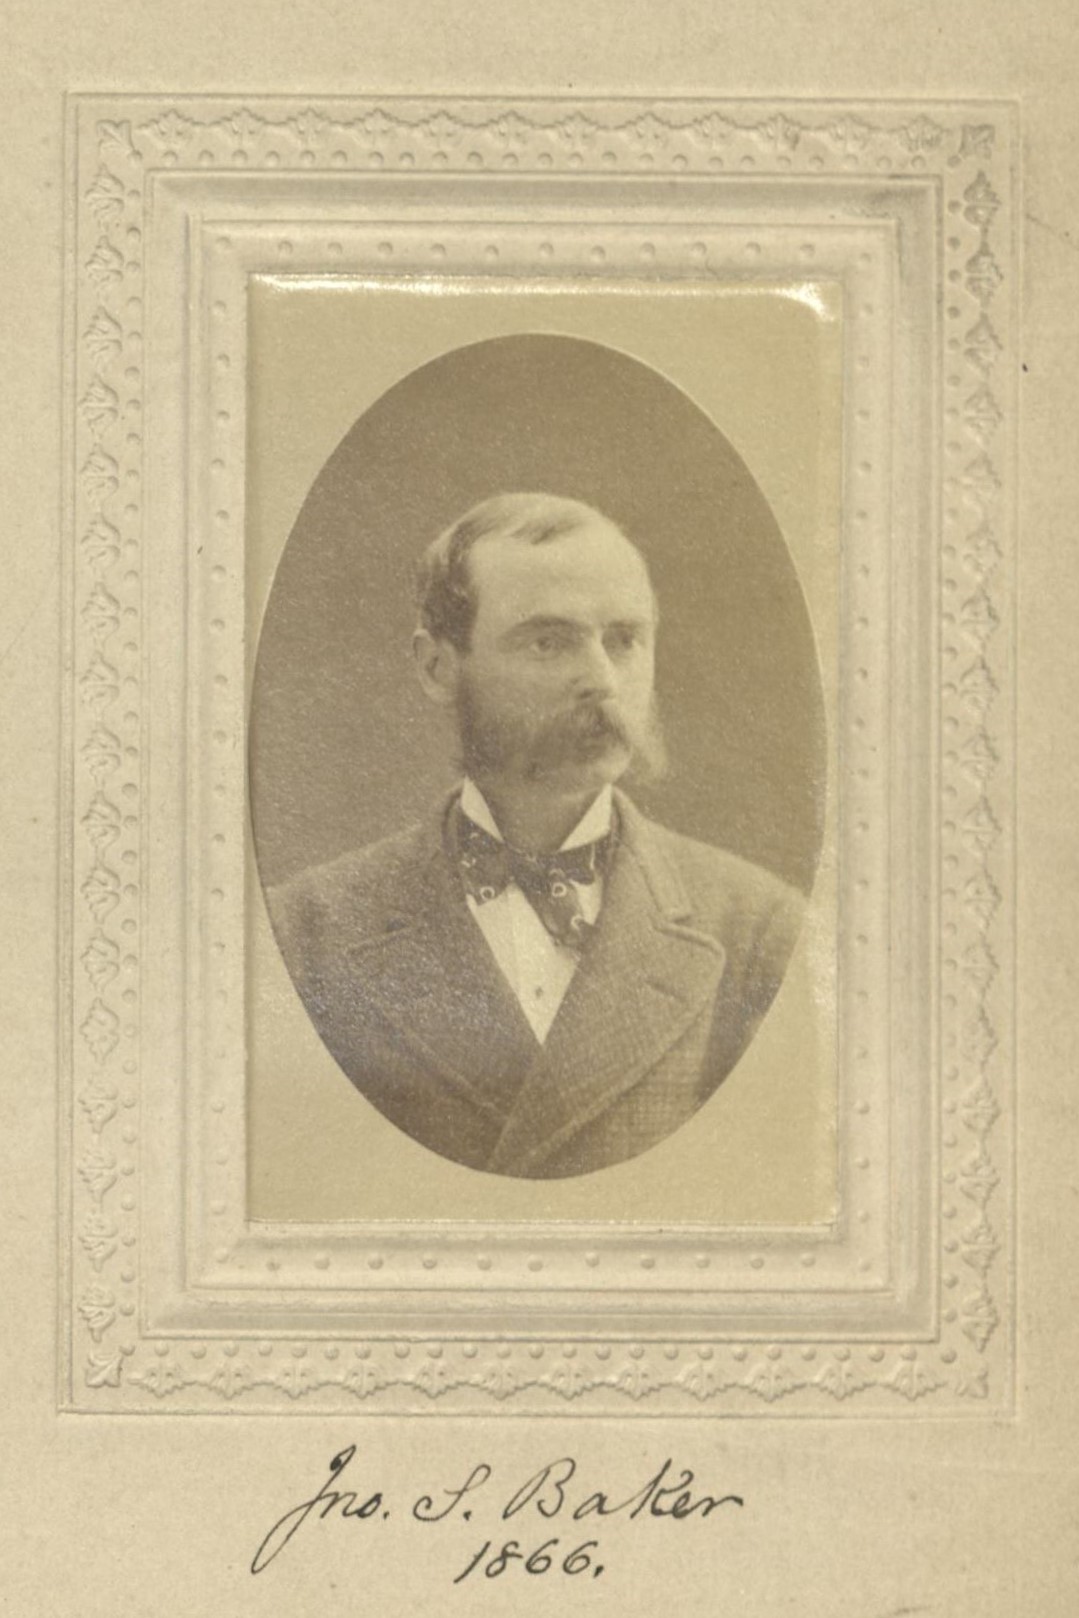 Member portrait of John S. Baker